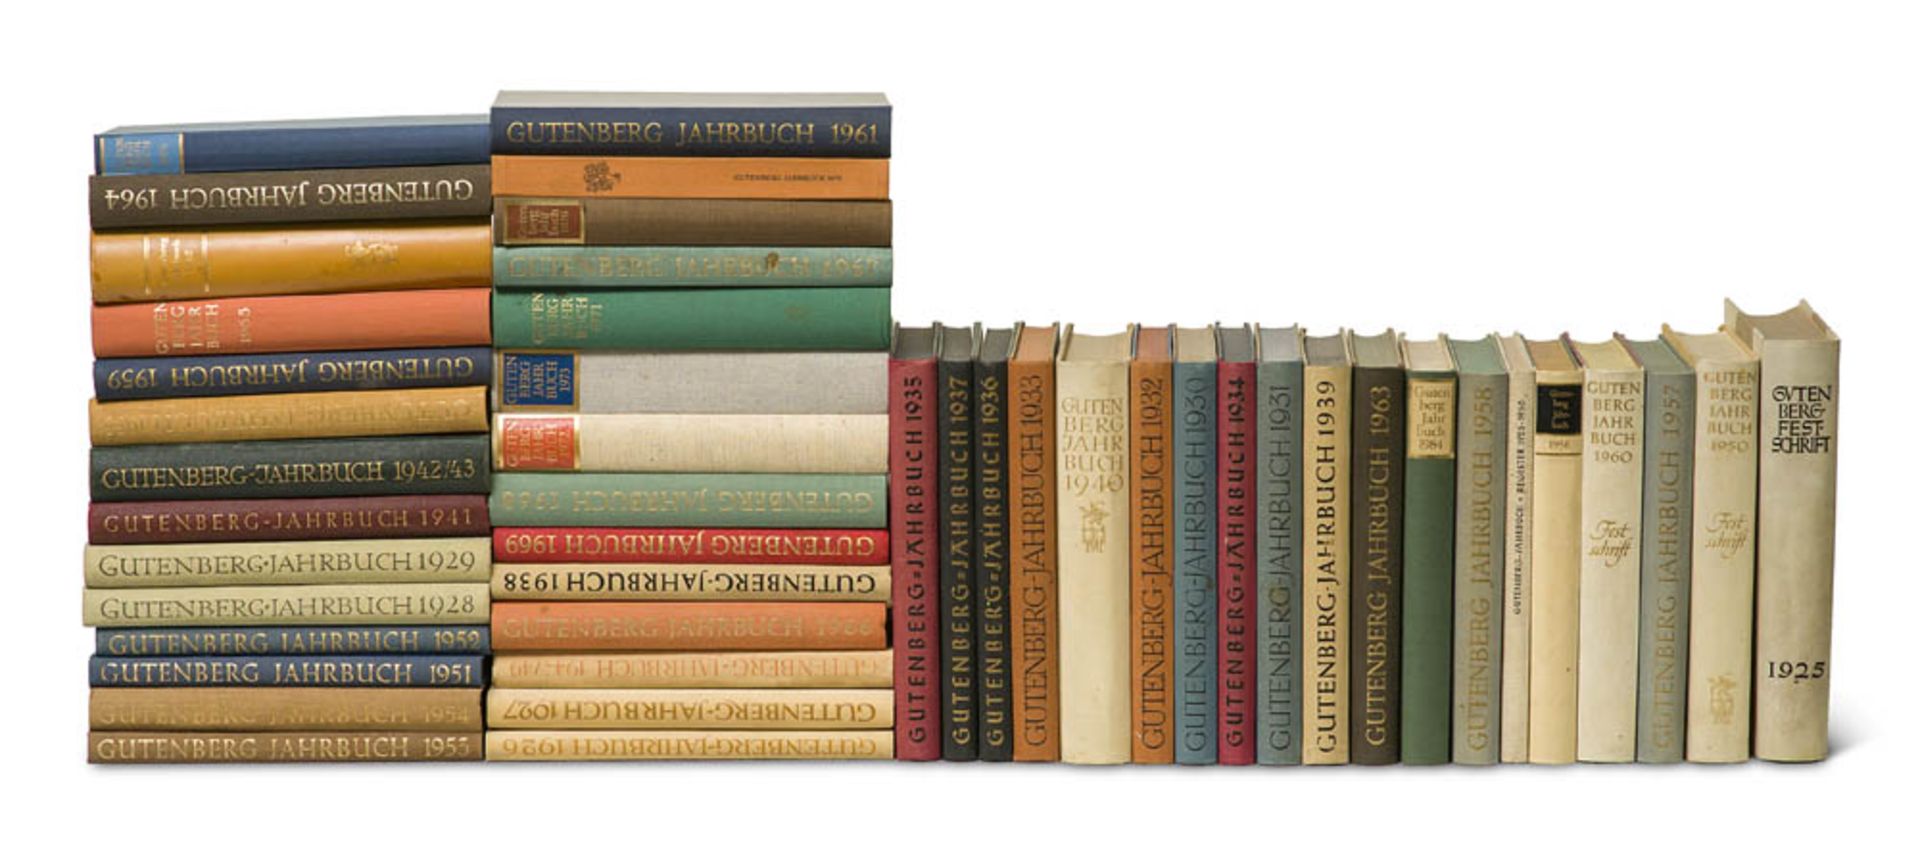 Gutenberg-Jahrbuch. 46 Bände, Jahrgänge 1925-1957, 1959-1973,1975,1979, 1984f. Mit zahlreichen